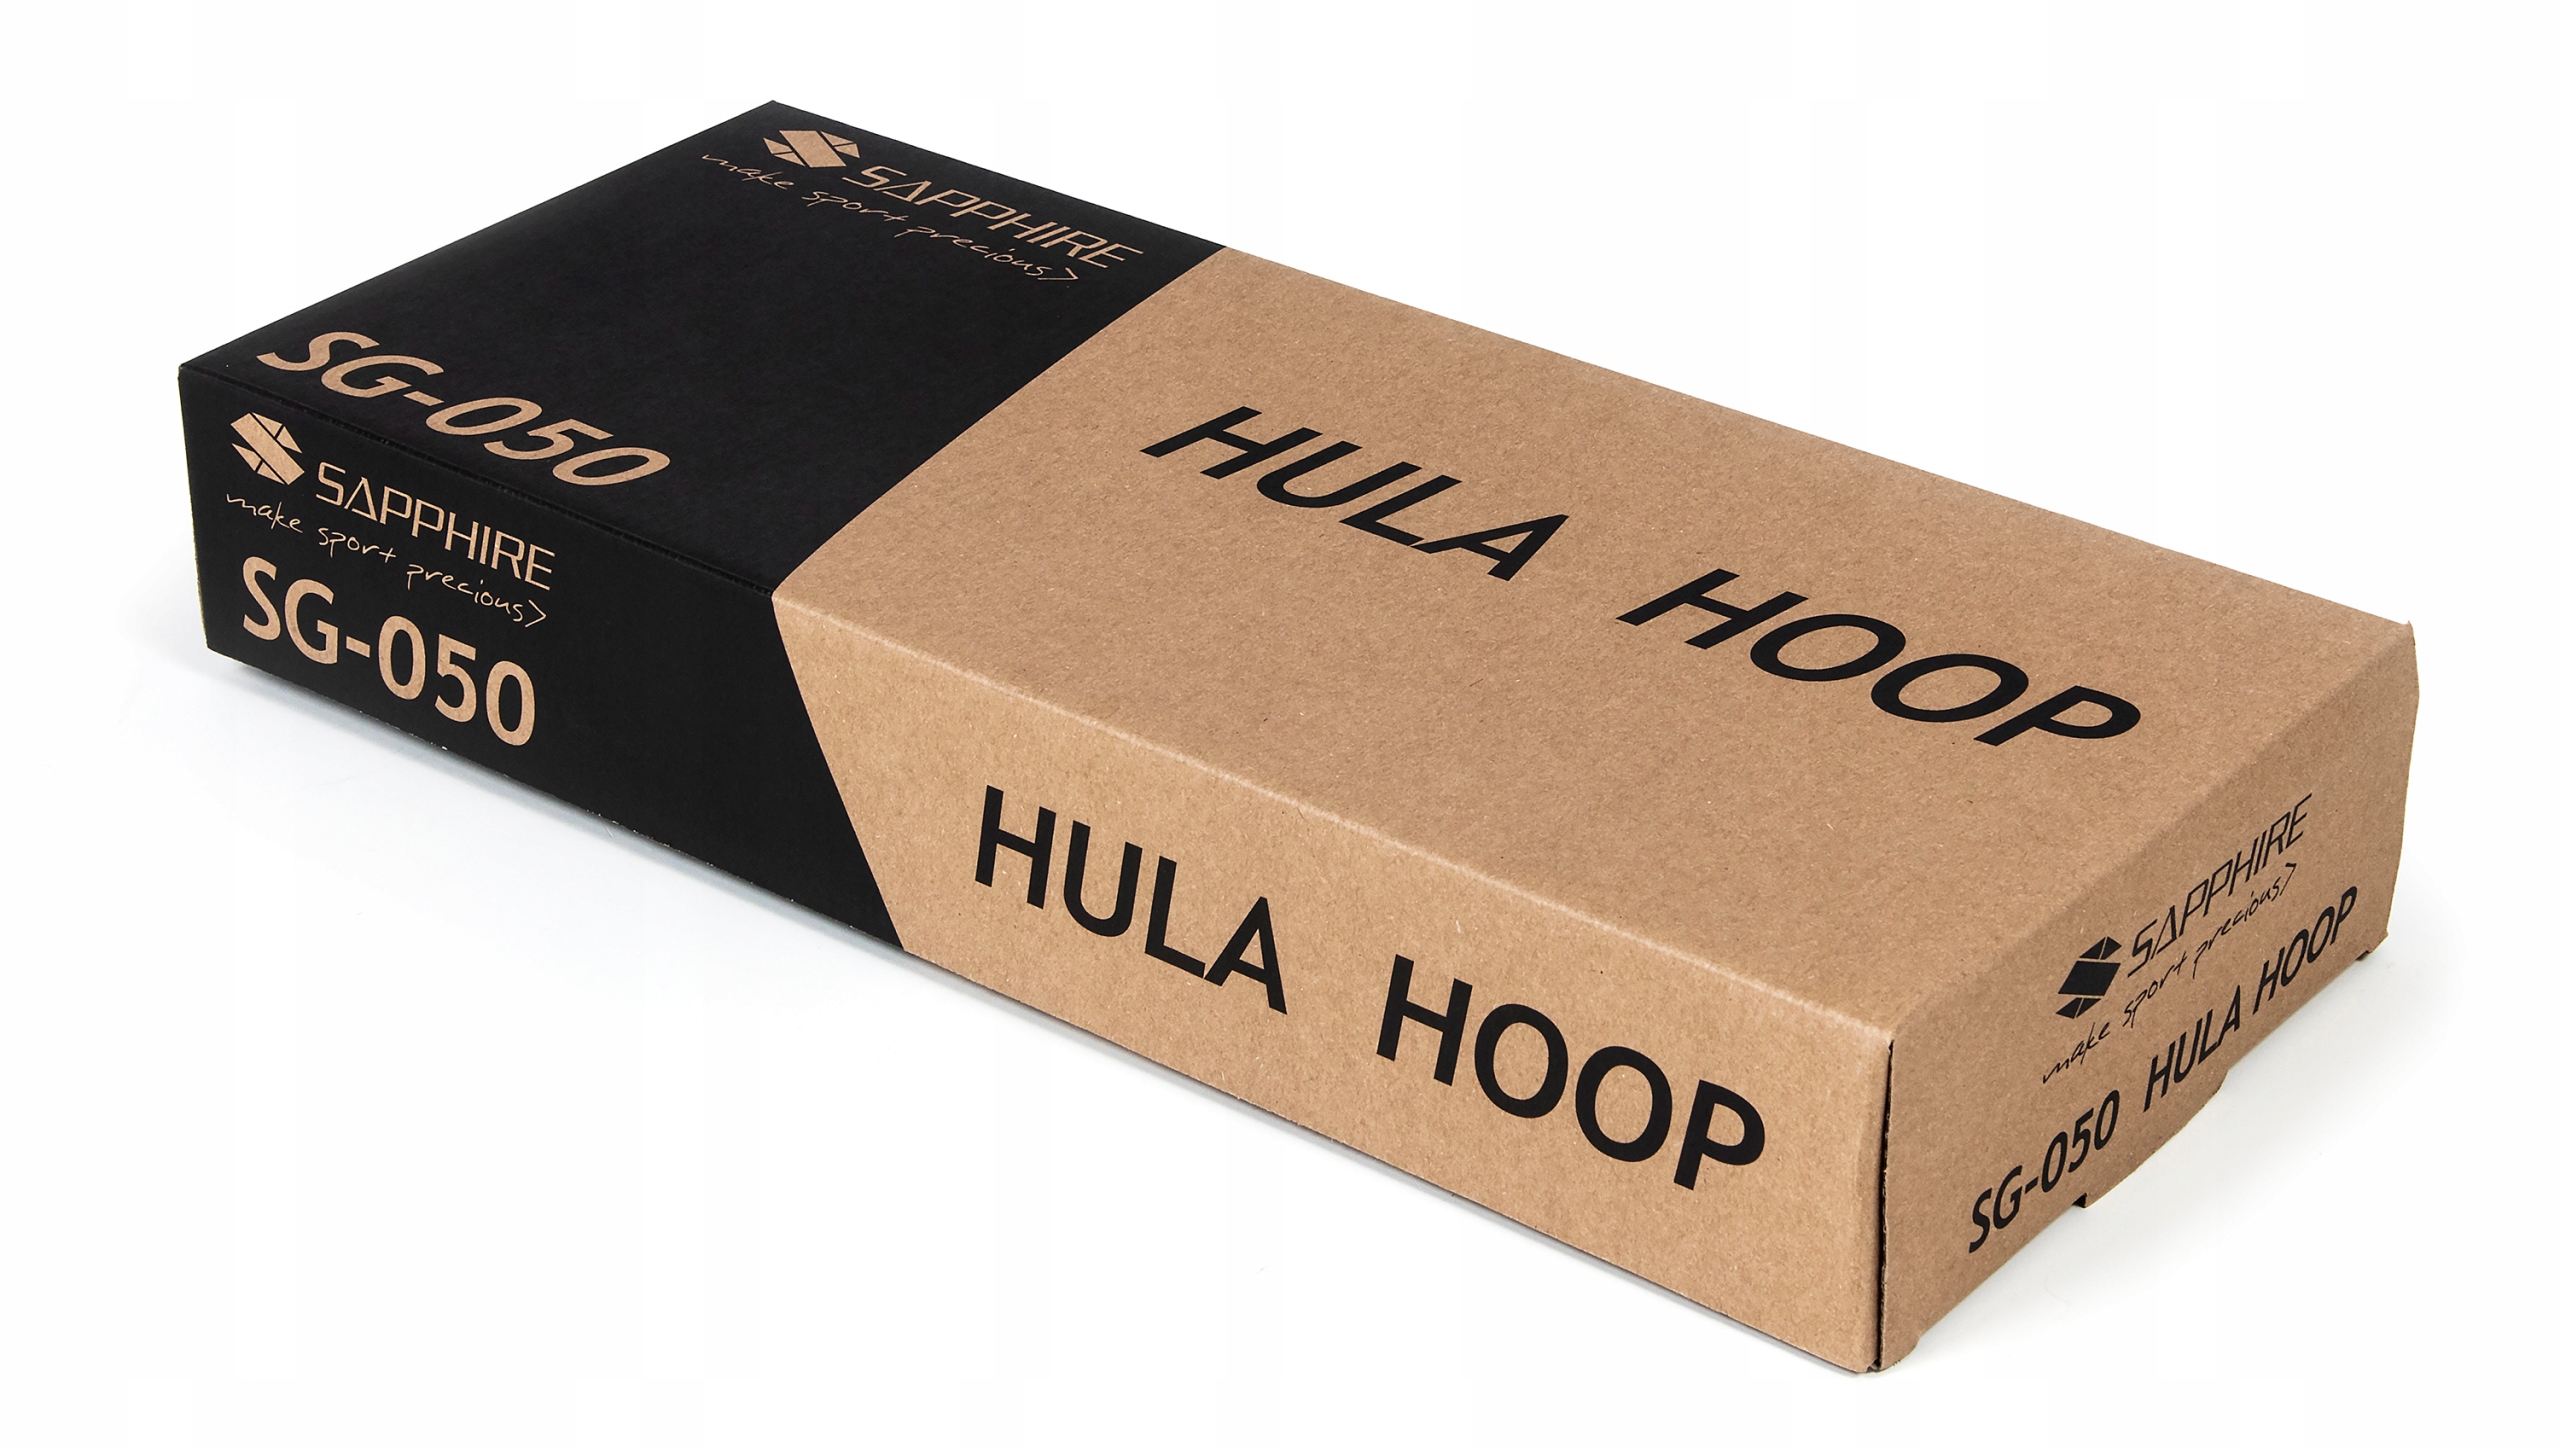 Hula hop Sapphire SG-050